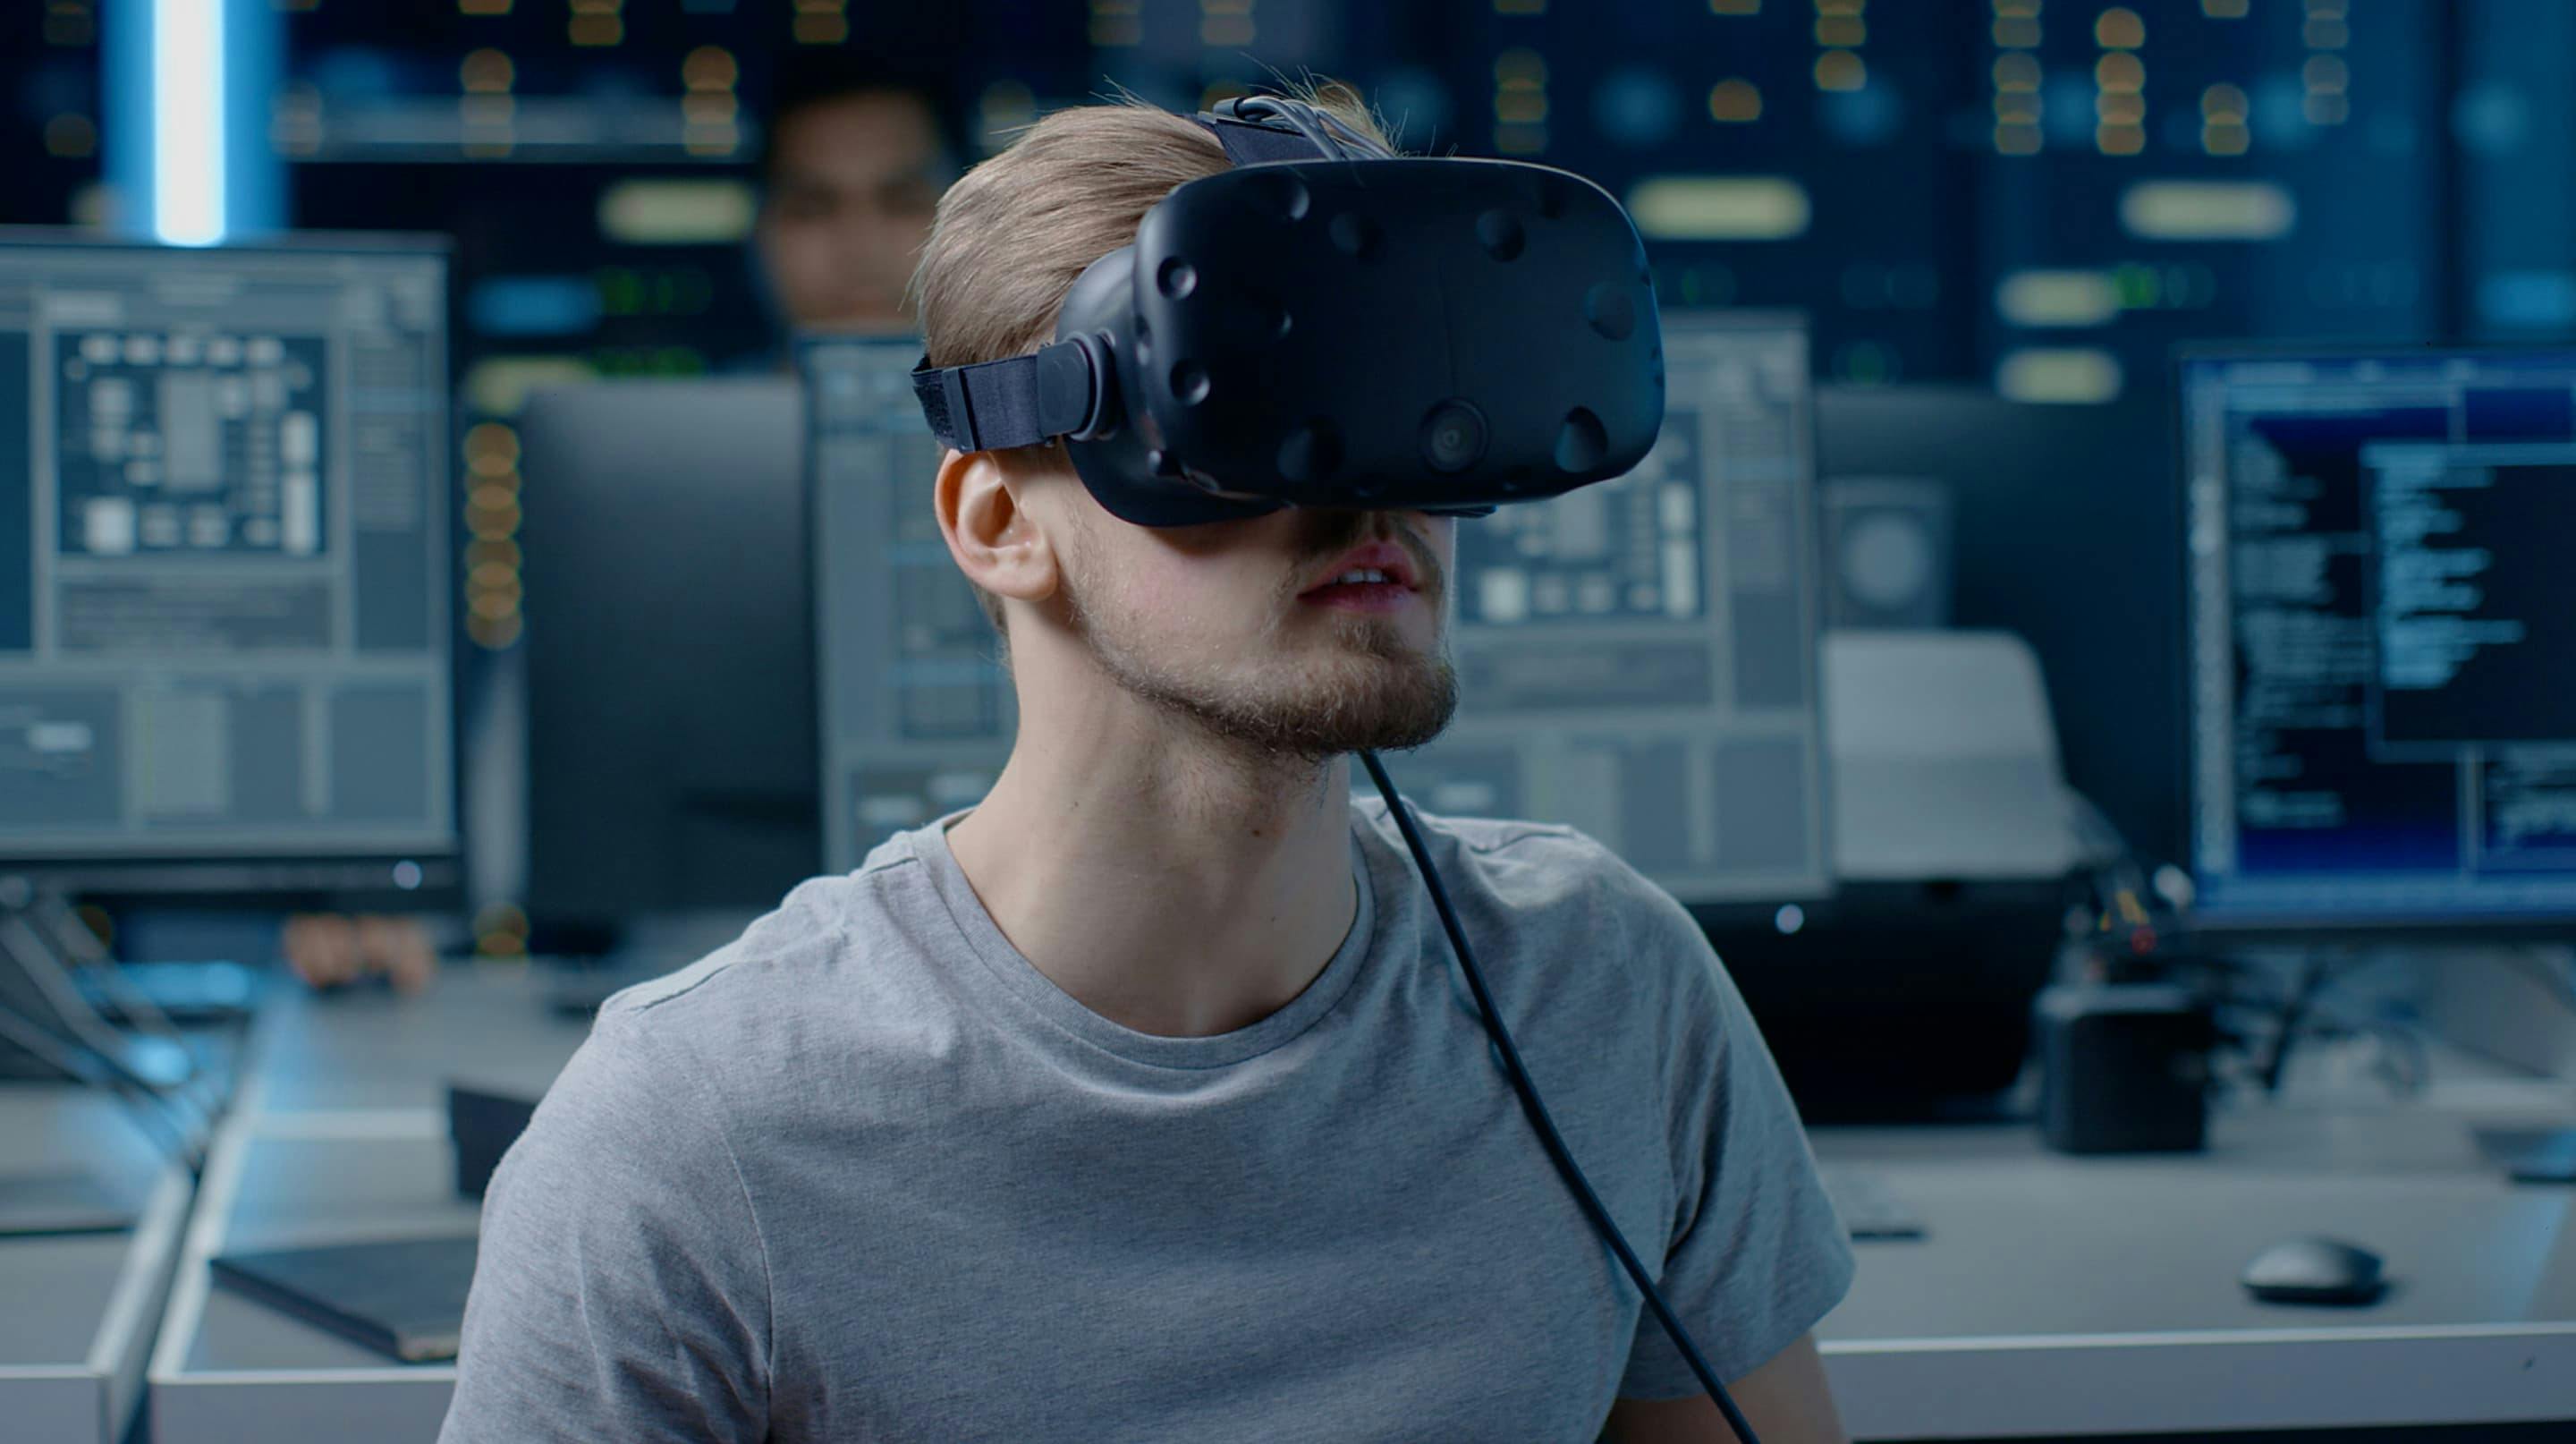 Wir bauen nach Ihren Bedürfnissen atemberaubende CGI- und Virtual Reality-Erlebnisse